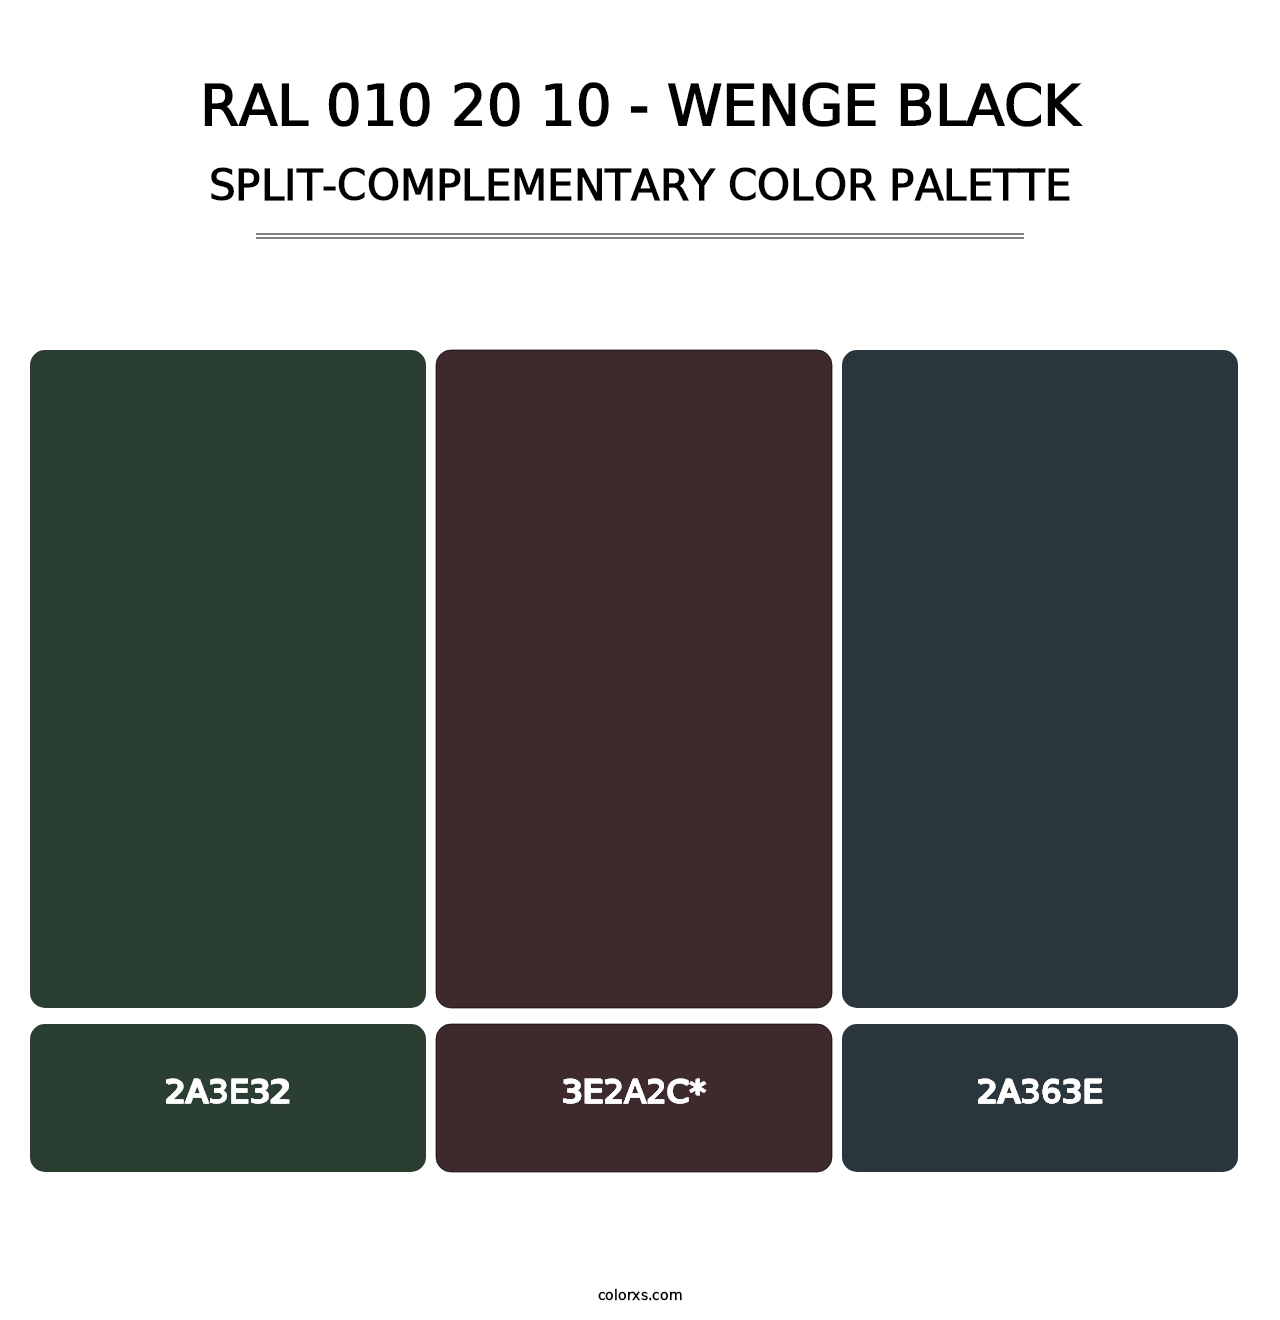 RAL 010 20 10 - Wenge Black - Split-Complementary Color Palette